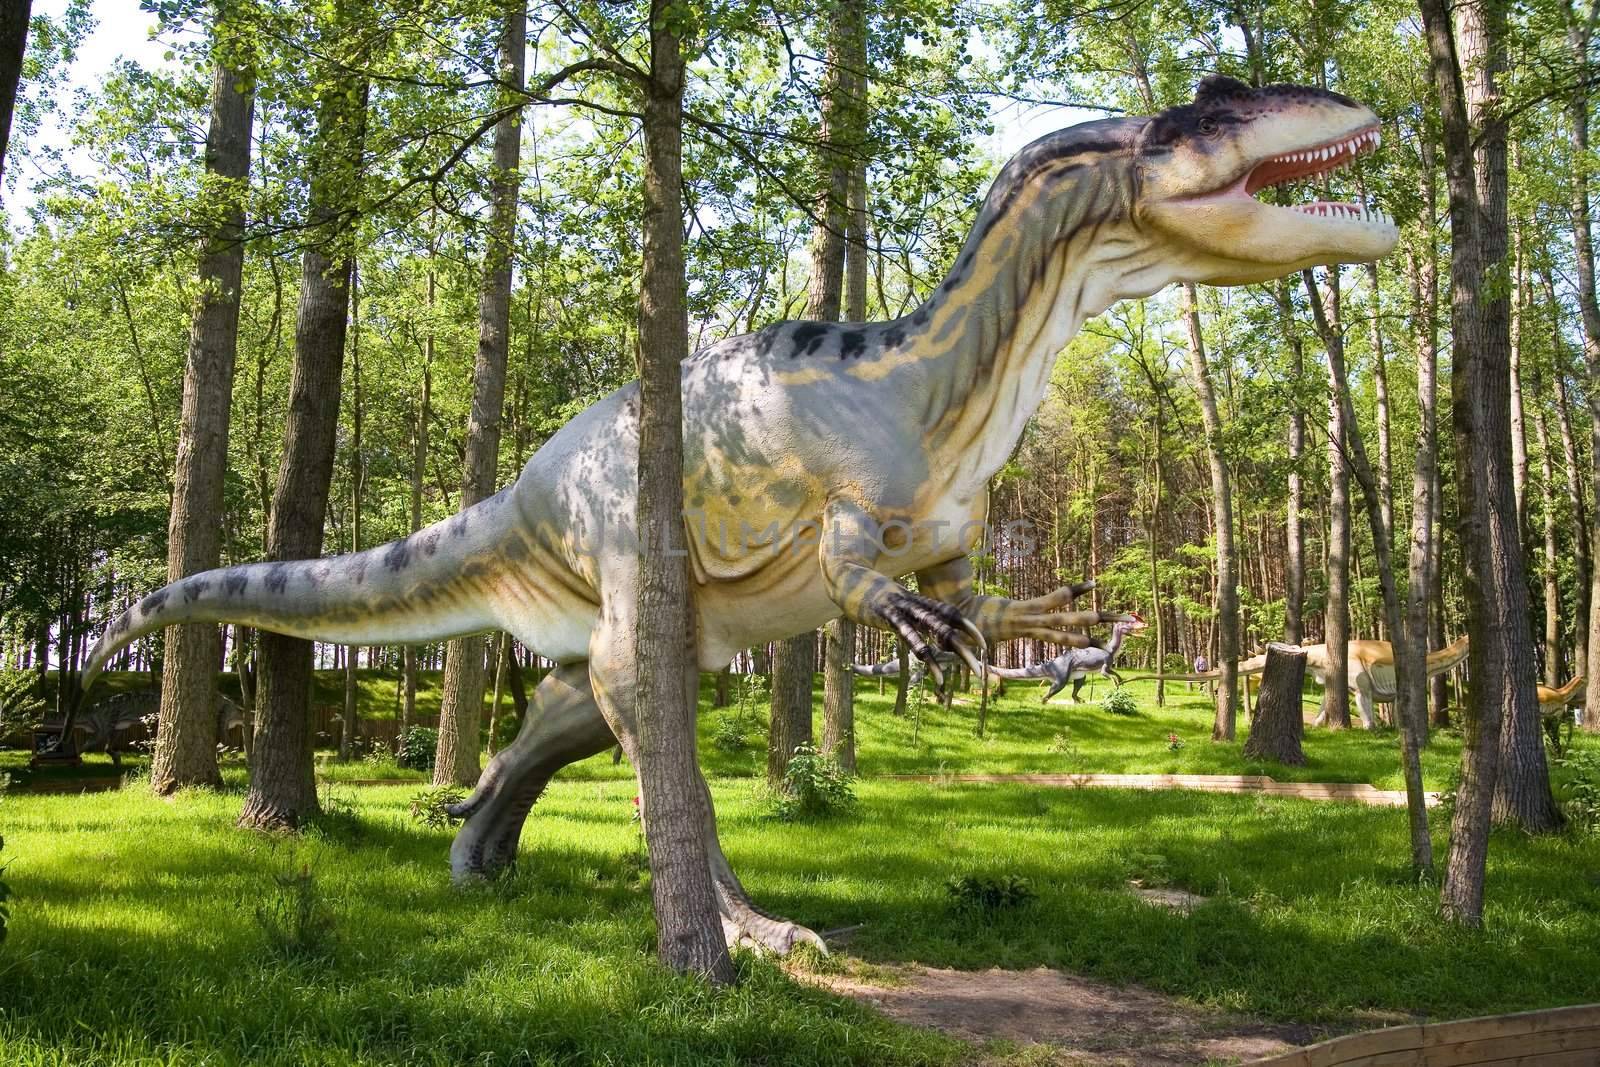 Jurassic park - set of dinosaurs - Allosaurus (Allosaurus fragilis)